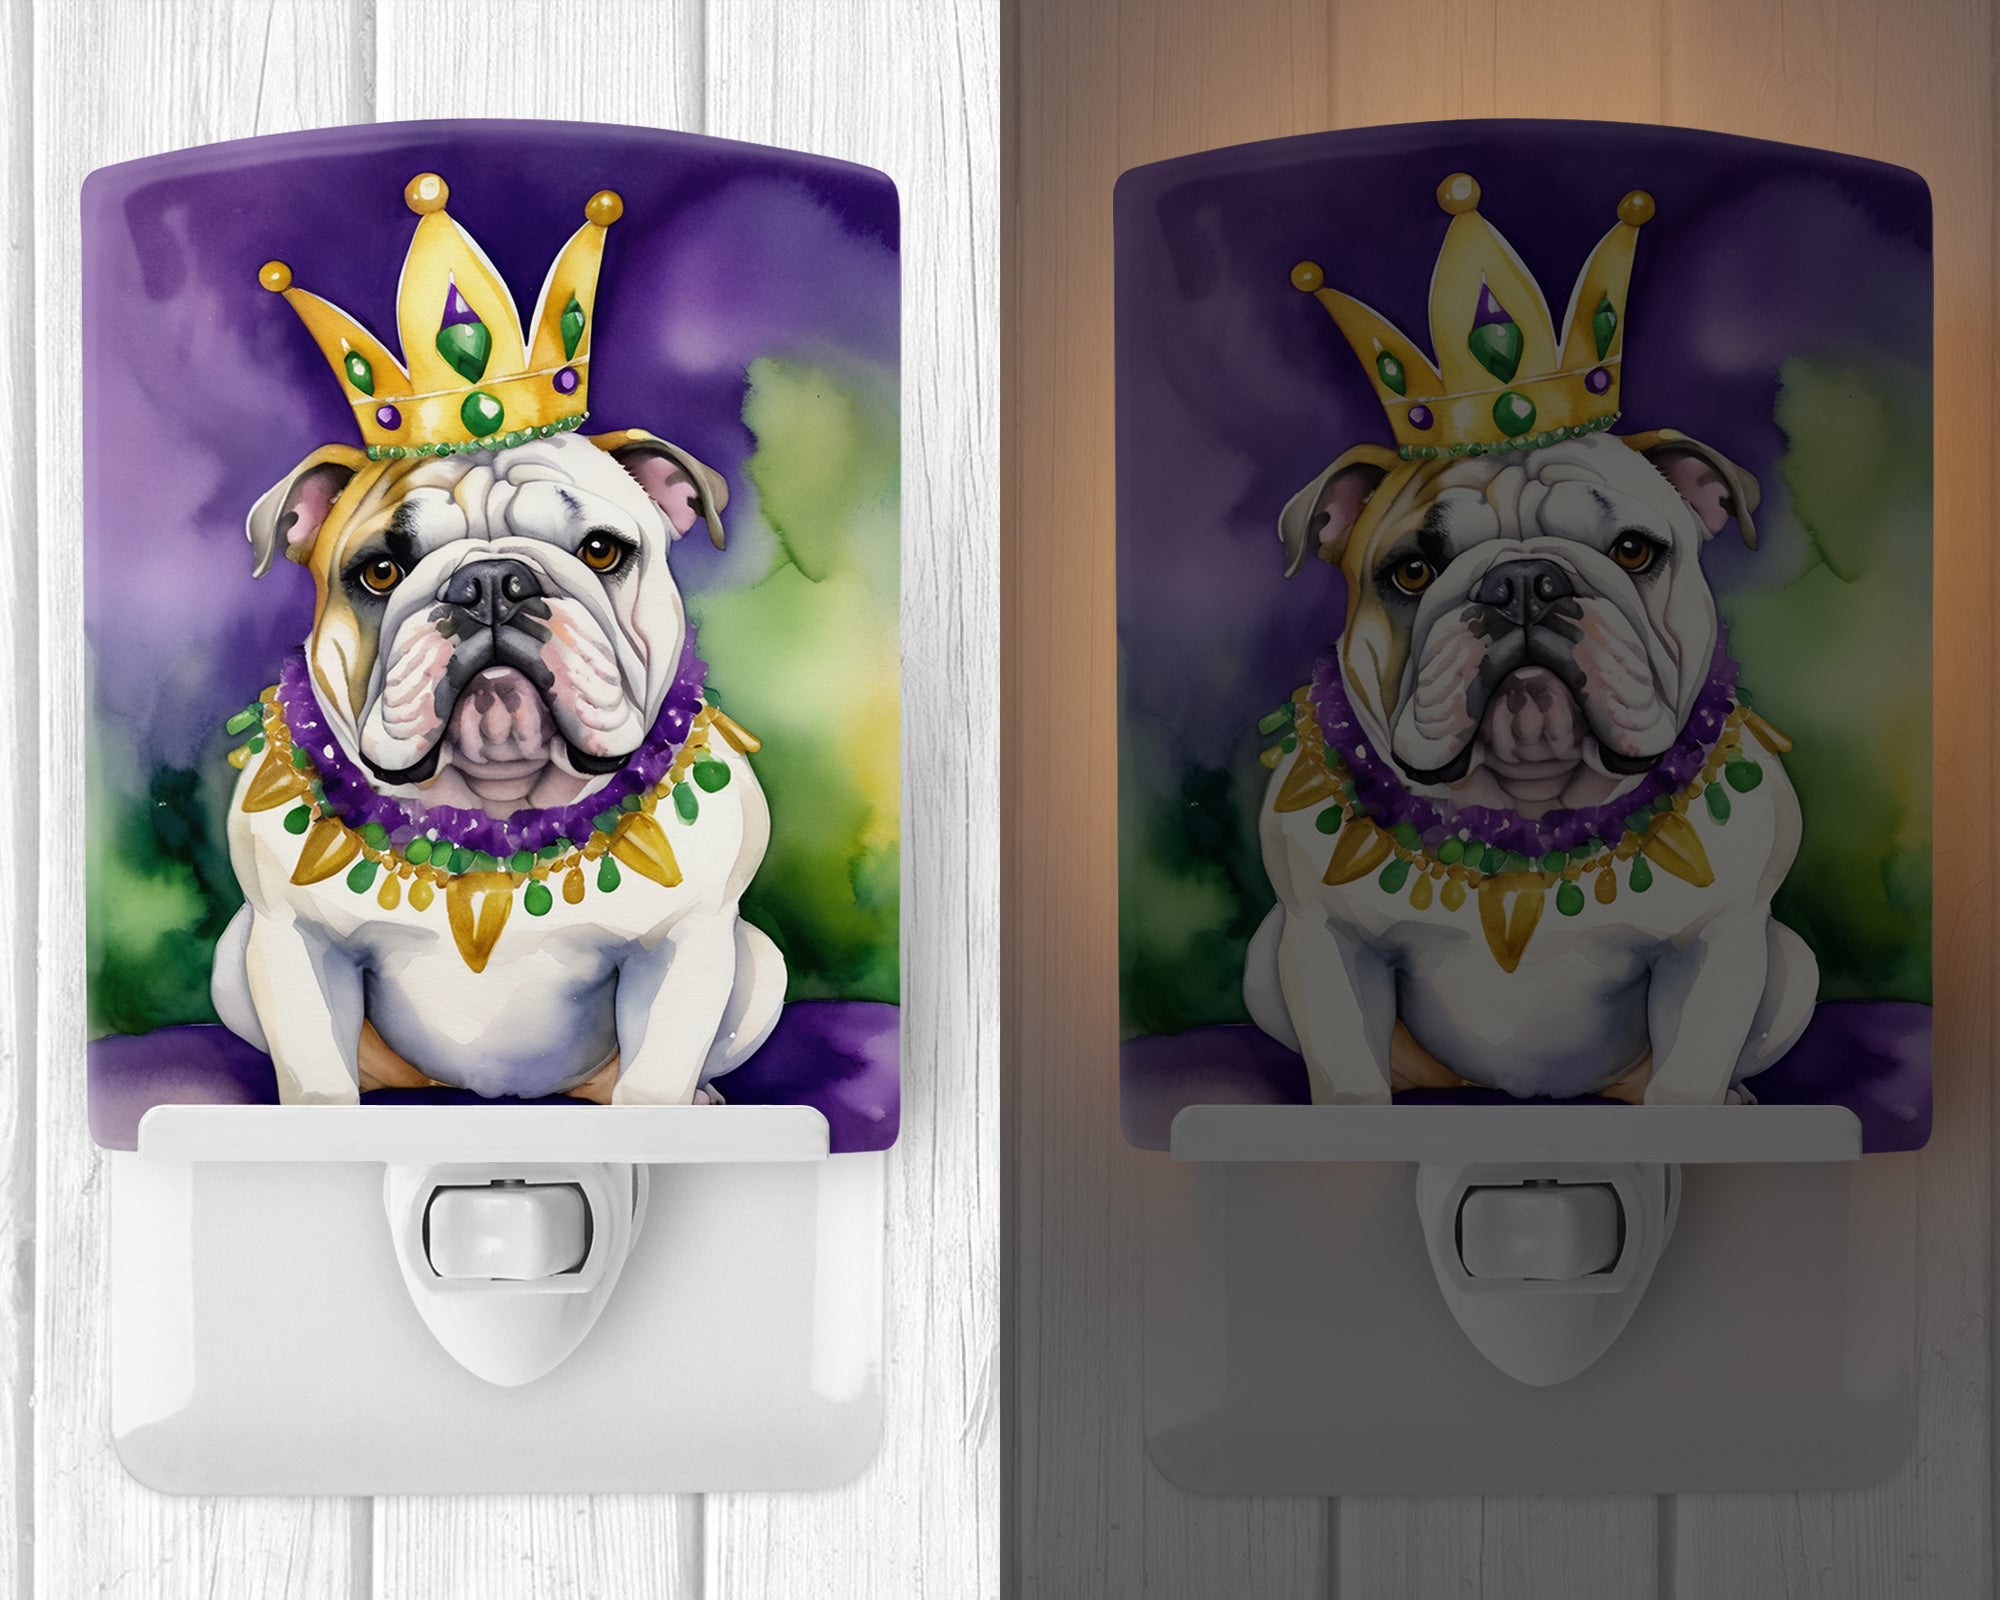 English Bulldog King of Mardi Gras Ceramic Night Light